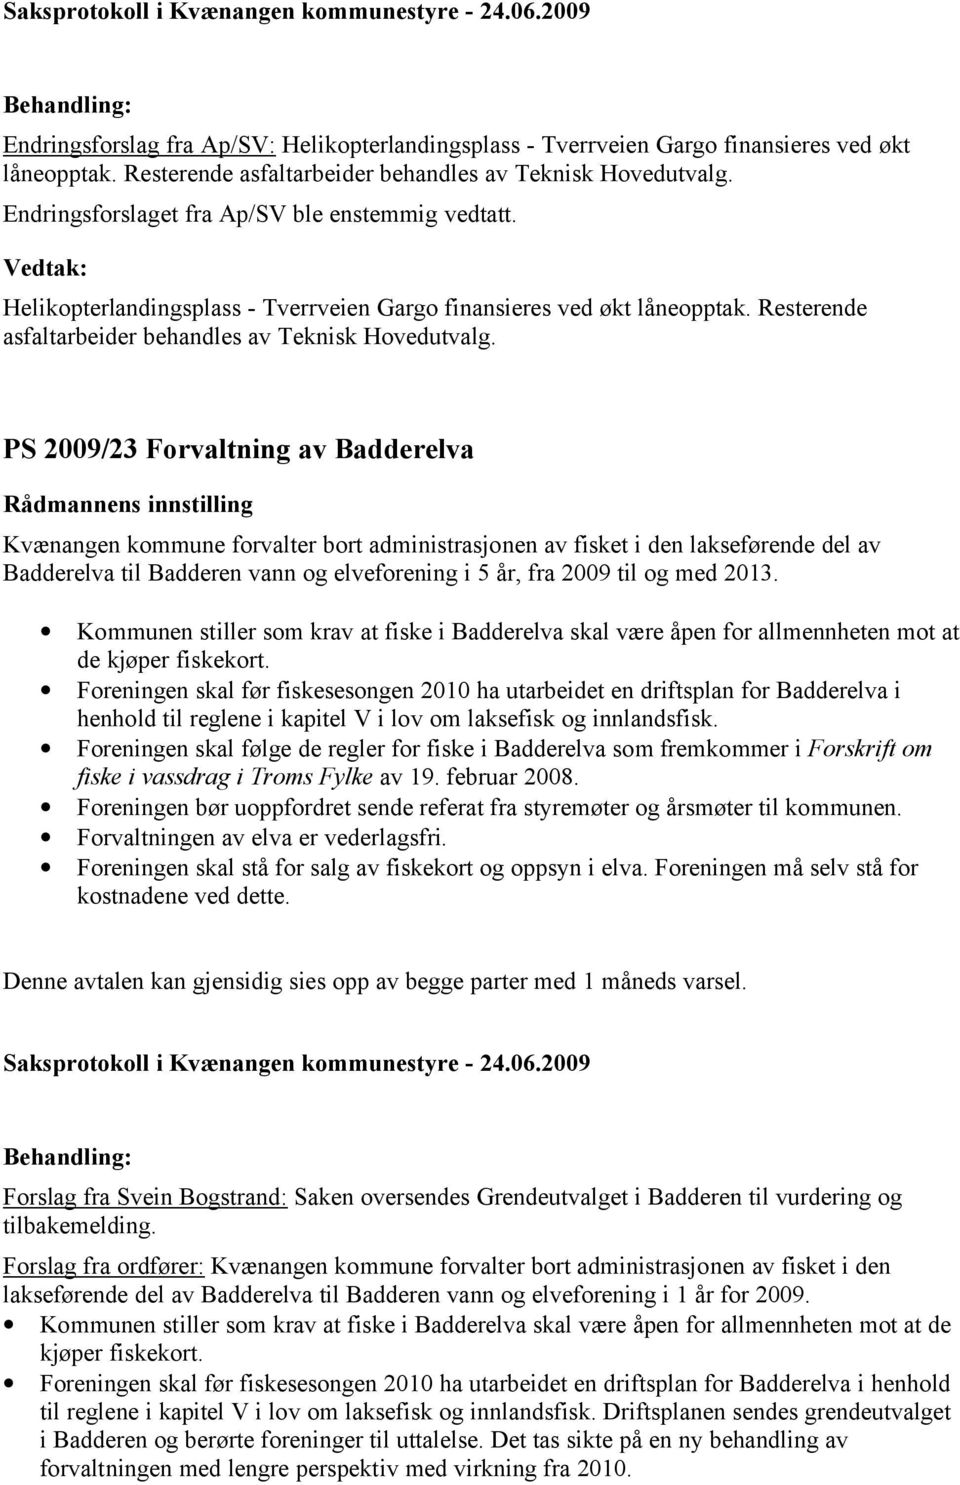 PS 2009/23 Forvaltning av Badderelva Kvænangen kommune forvalter bort administrasjonen av fisket i den lakseførende del av Badderelva til Badderen vann og elveforening i 5 år, fra 2009 til og med